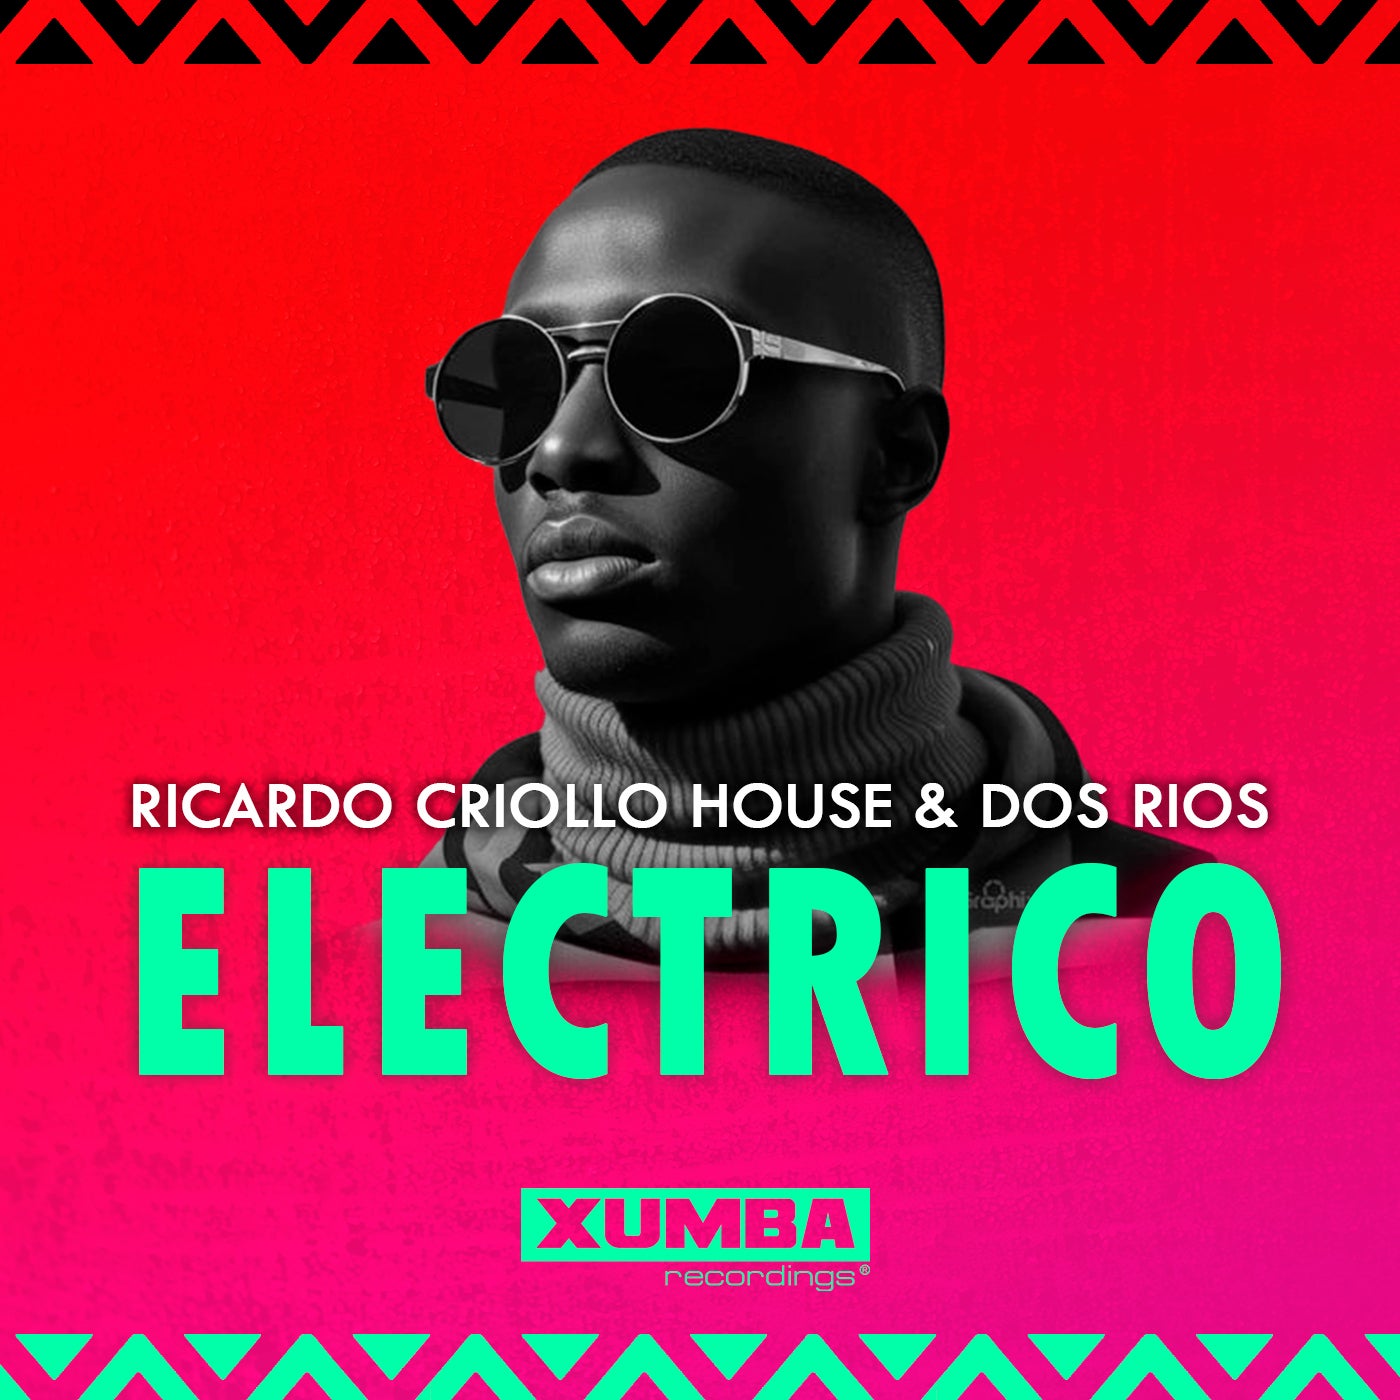 Ricardo Criollo House, Dos Rios - Electrico on Xumba Recordings